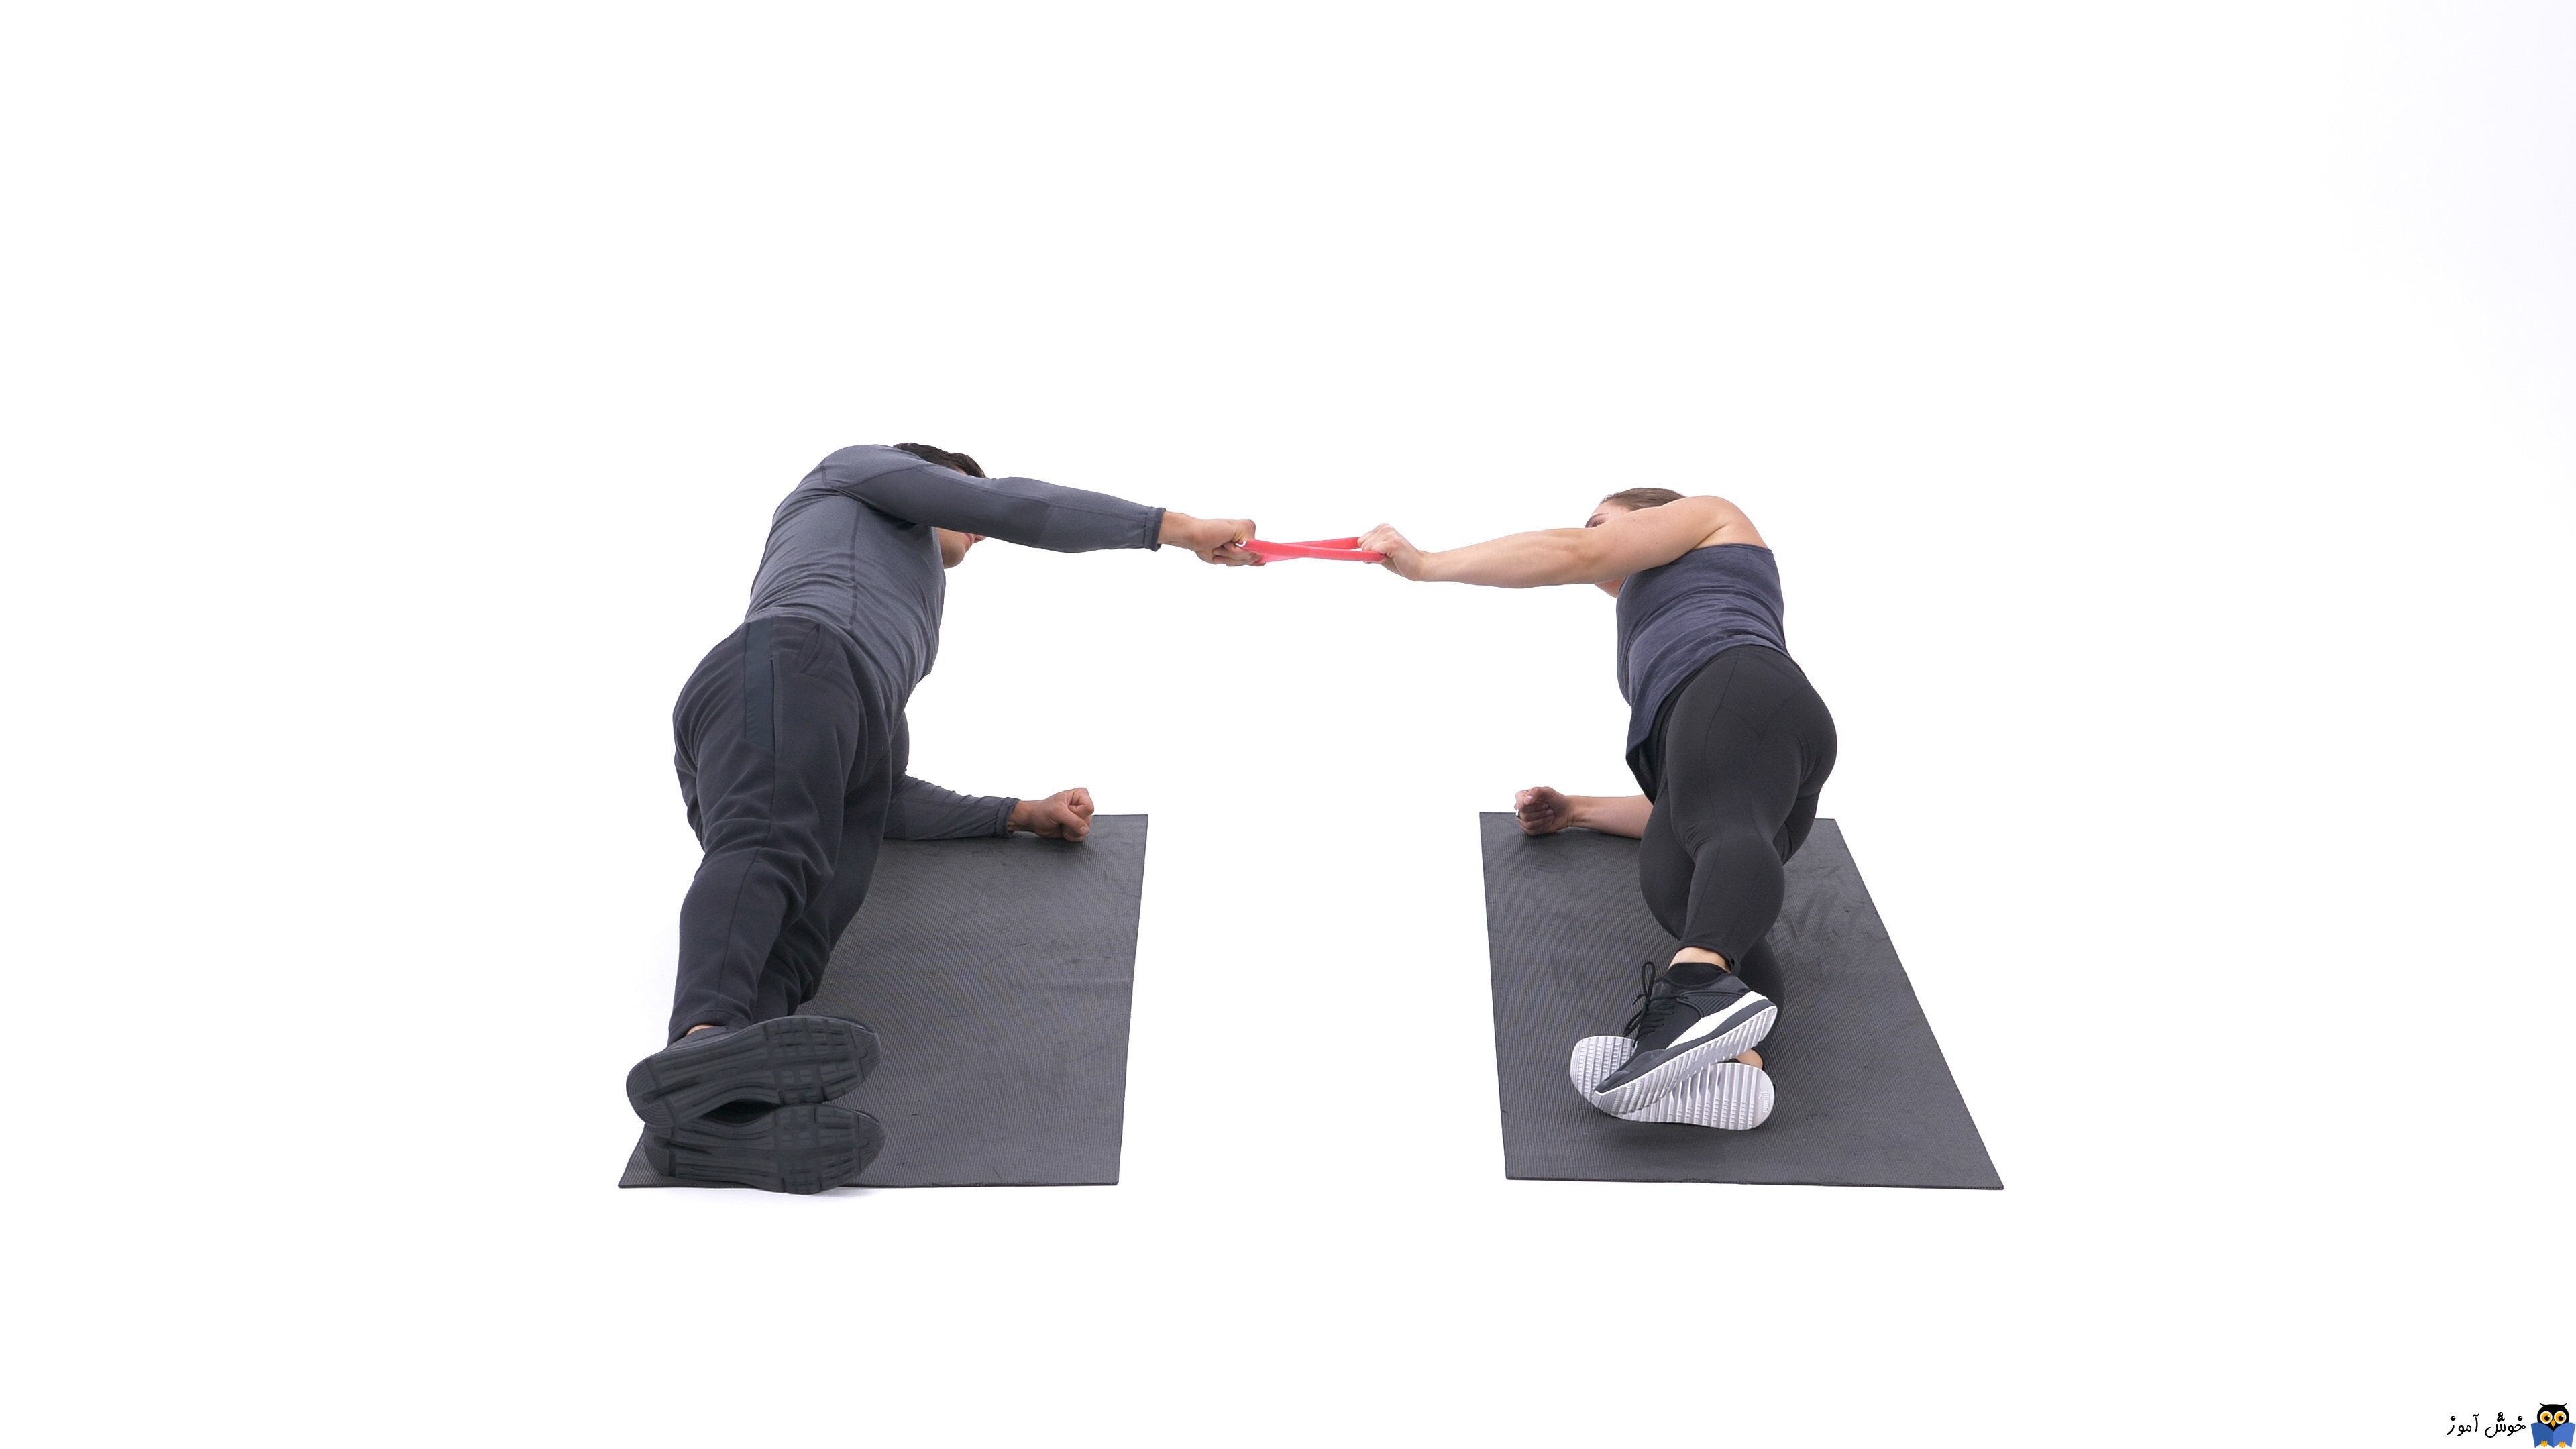 حرکات تمرینی با کش - حرکت Partner side plank band row